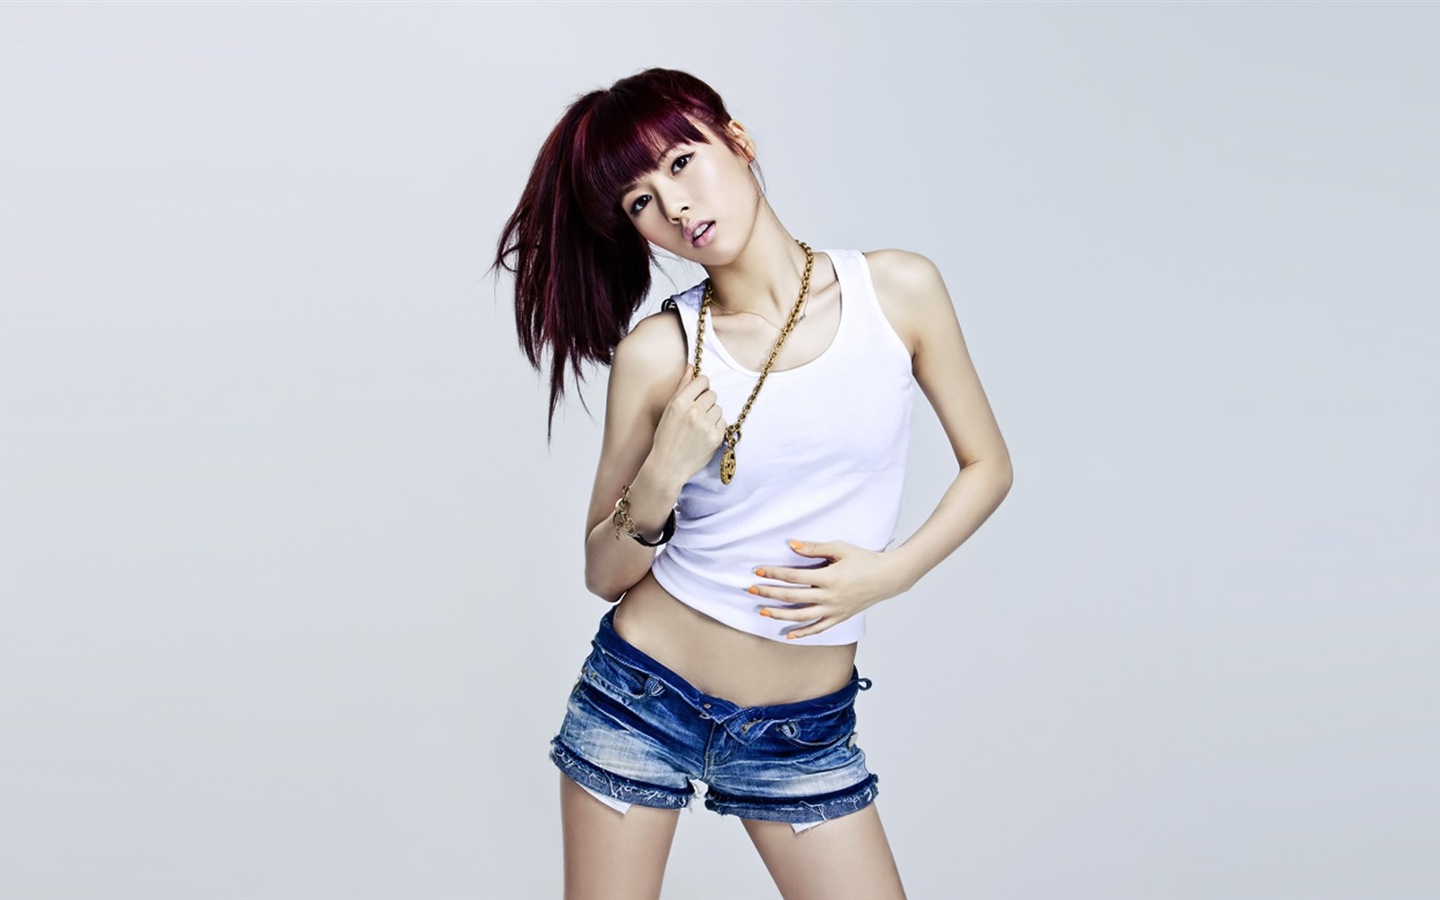 4Minute Musique coréenne belle combinaison Girls Wallpapers HD #11 - 1440x900